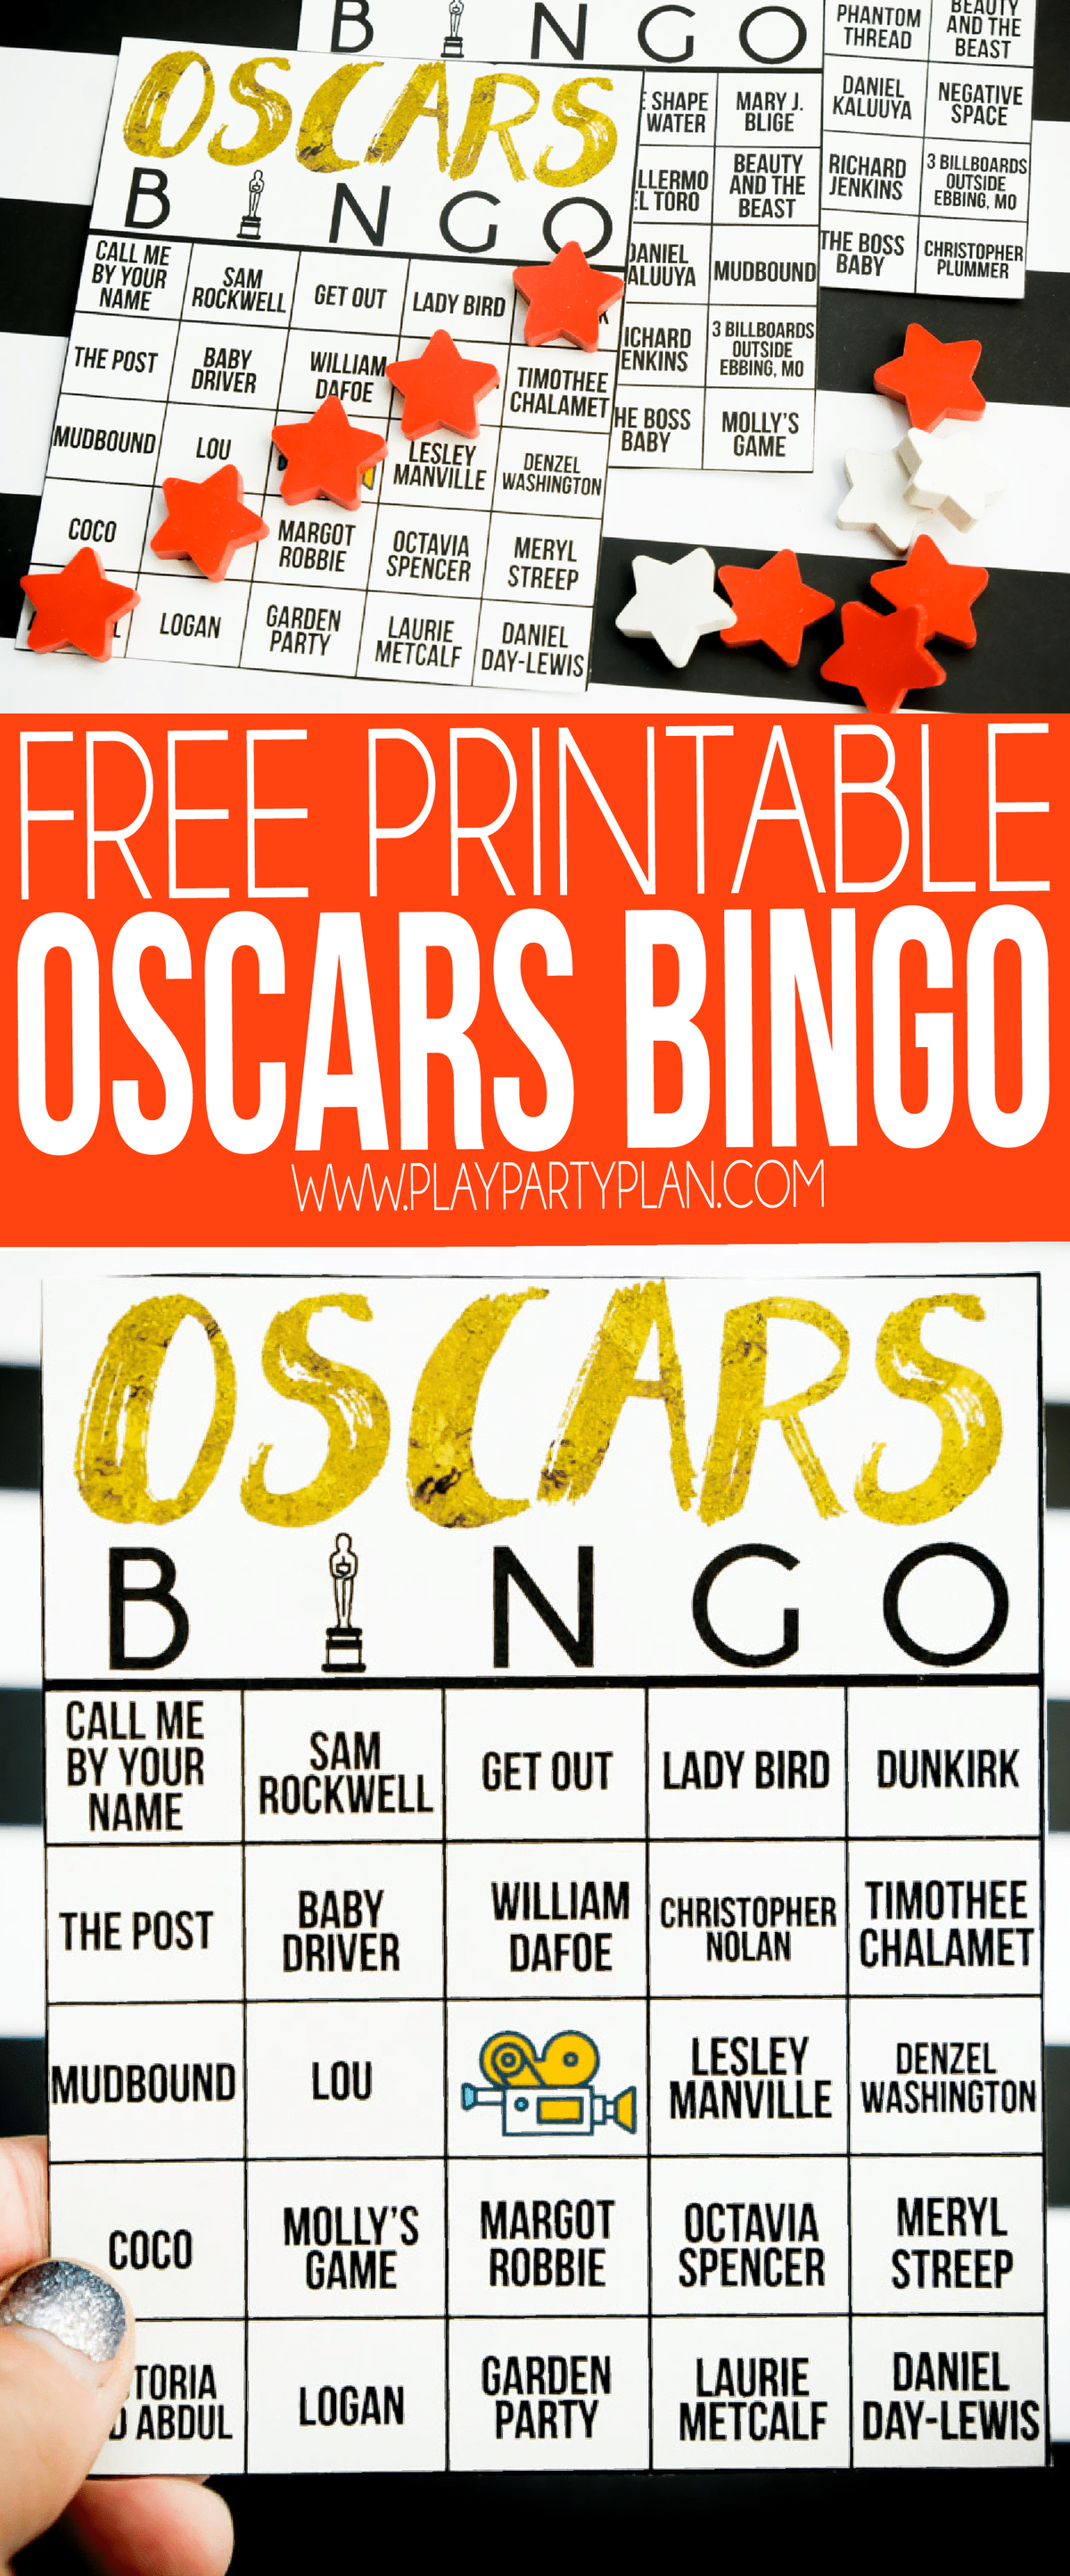 Tato oscarová bingo hra je ideální pro vaši příští oscarovou párty! Vyznačte mezery, když je pojmenován film nebo celebrita, a pokuste se být první, kdo jako první získá oscarové bingo!